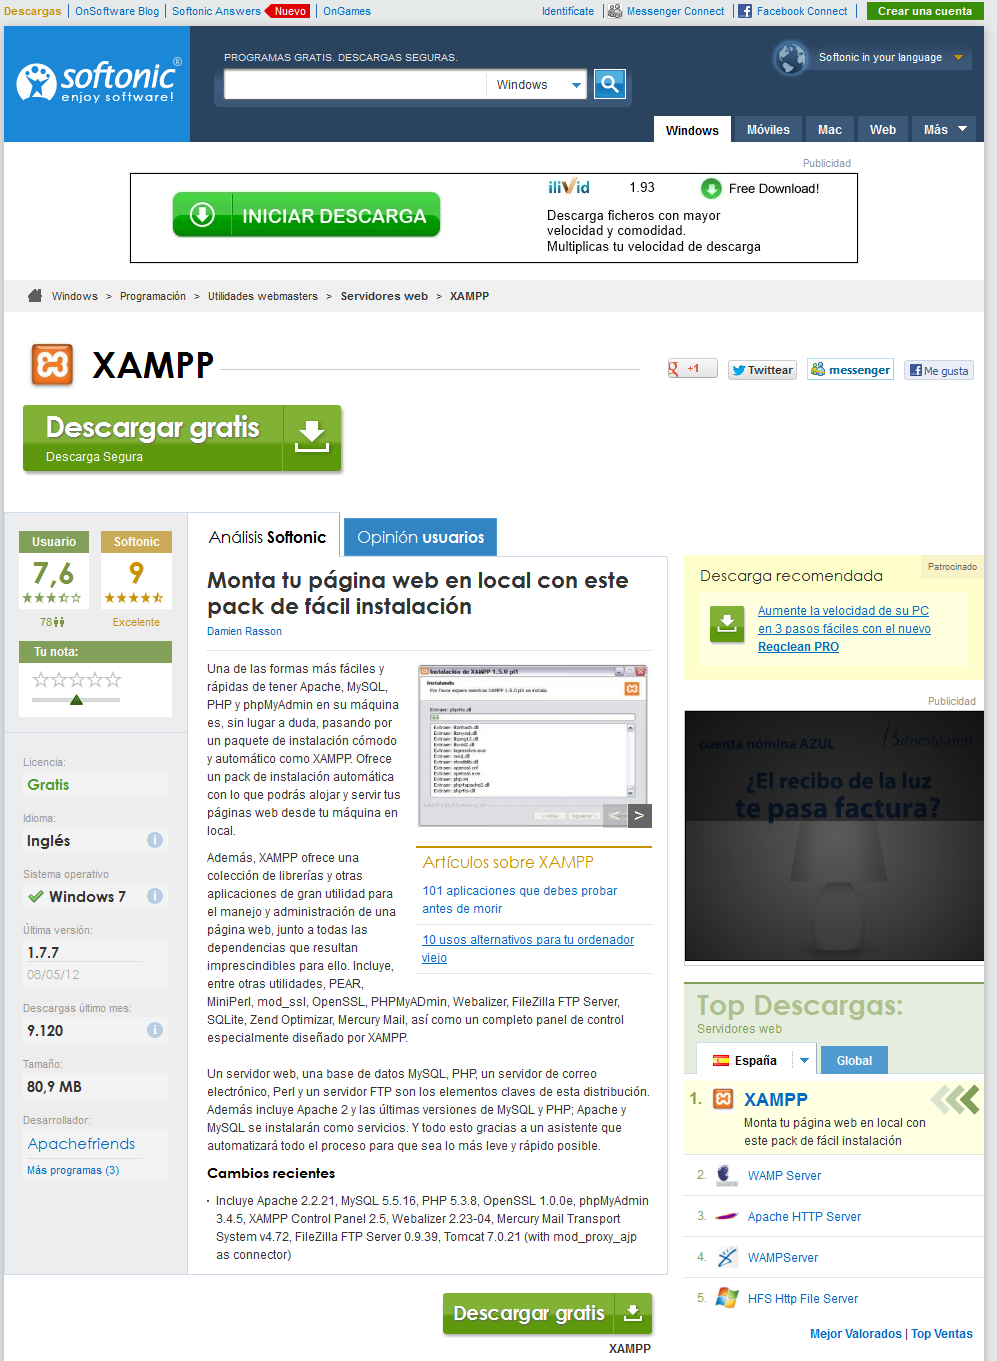 xampp control panel v3.2.1 download